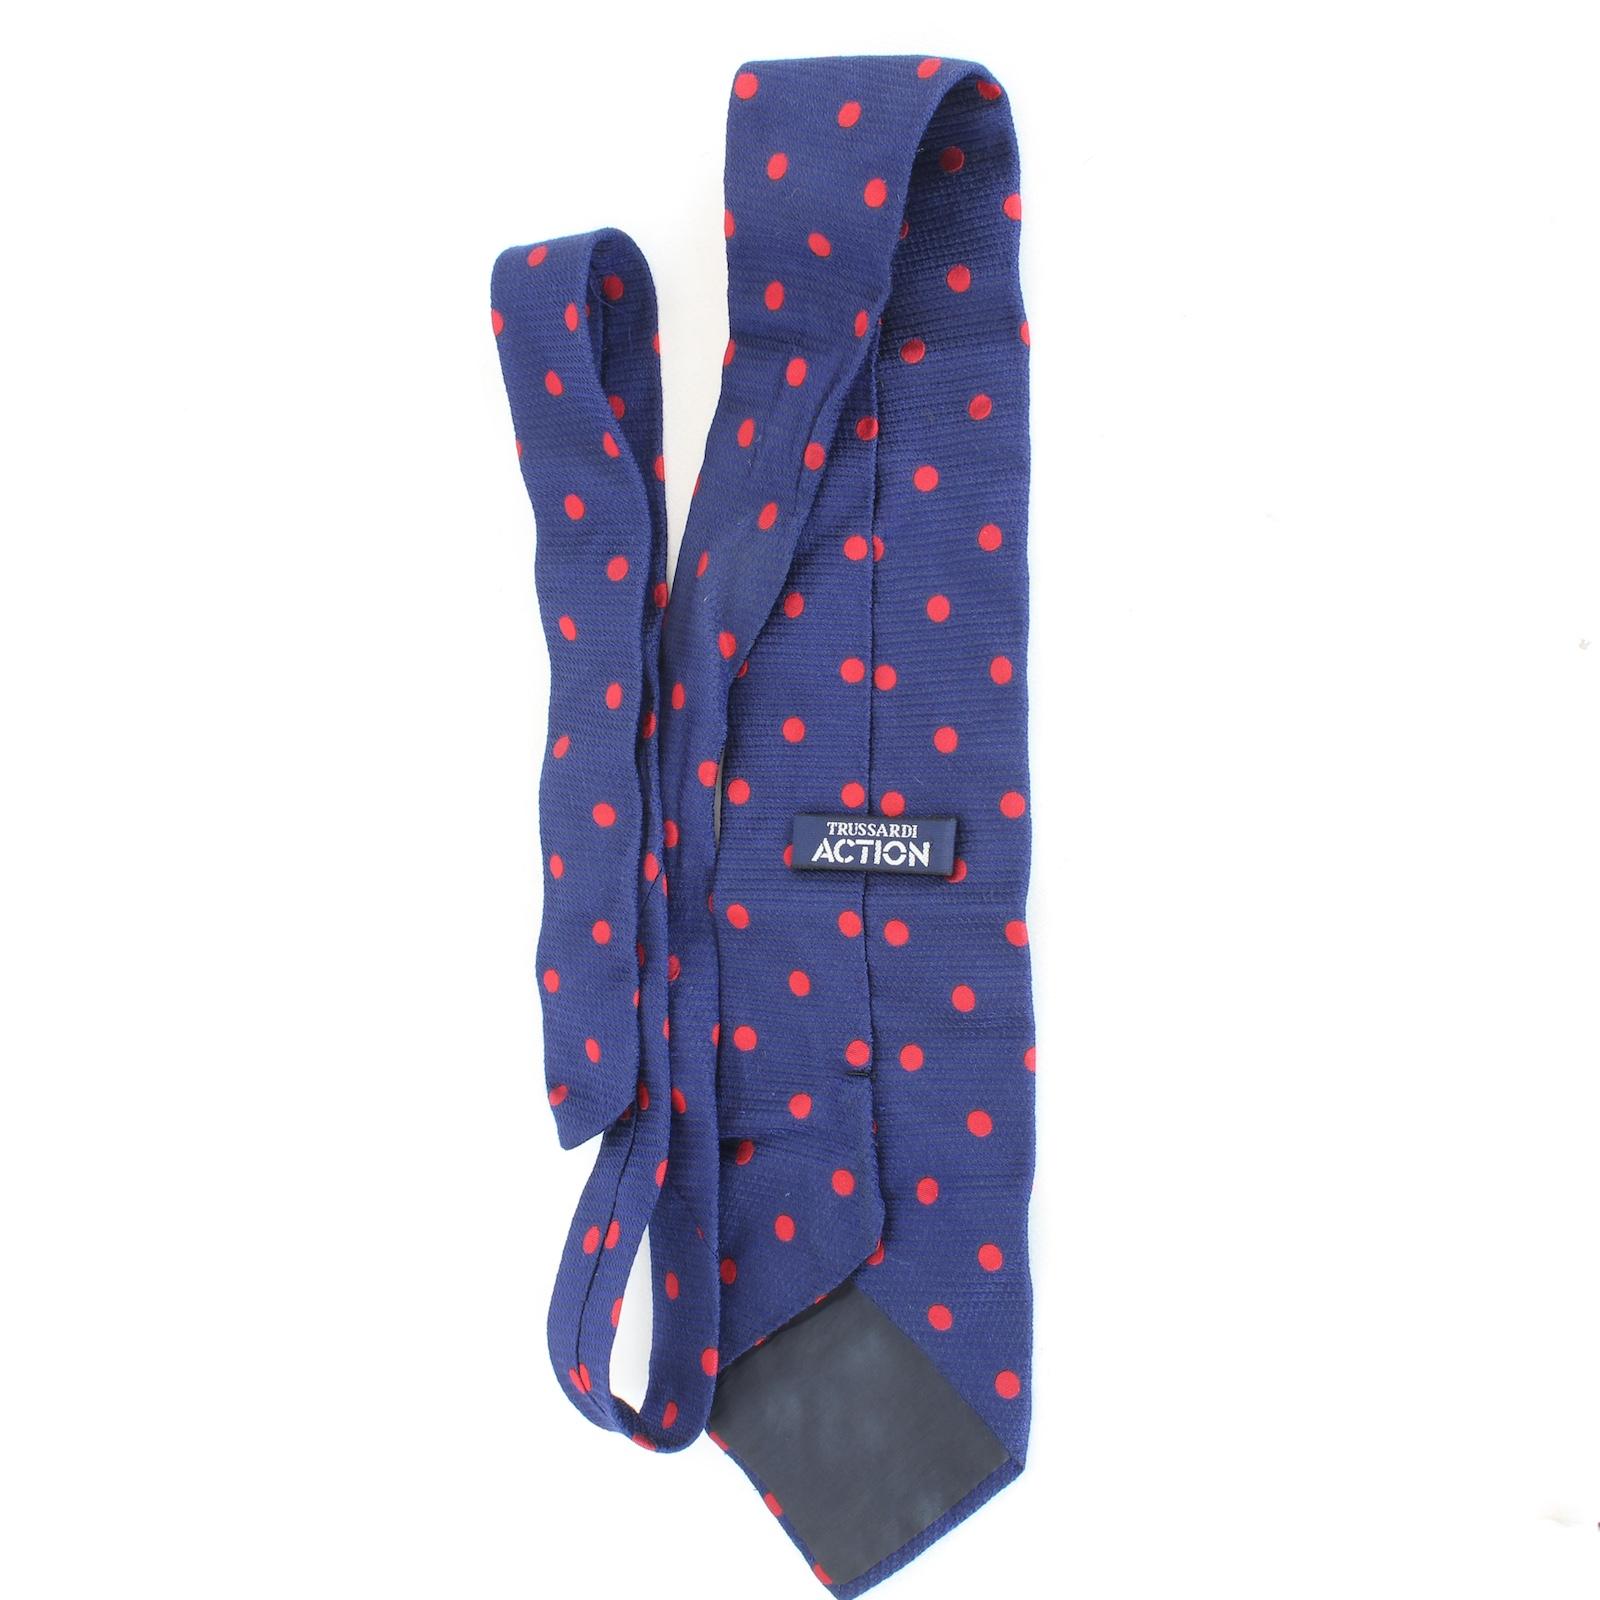 Pierre Cardin Krawatte aus den 80er Jahren. Blaue und rote Farbe mit Paisleymuster, 100% Seide. Hergestellt in Italien.

Länge: 138 cm
Breite: 11 cm